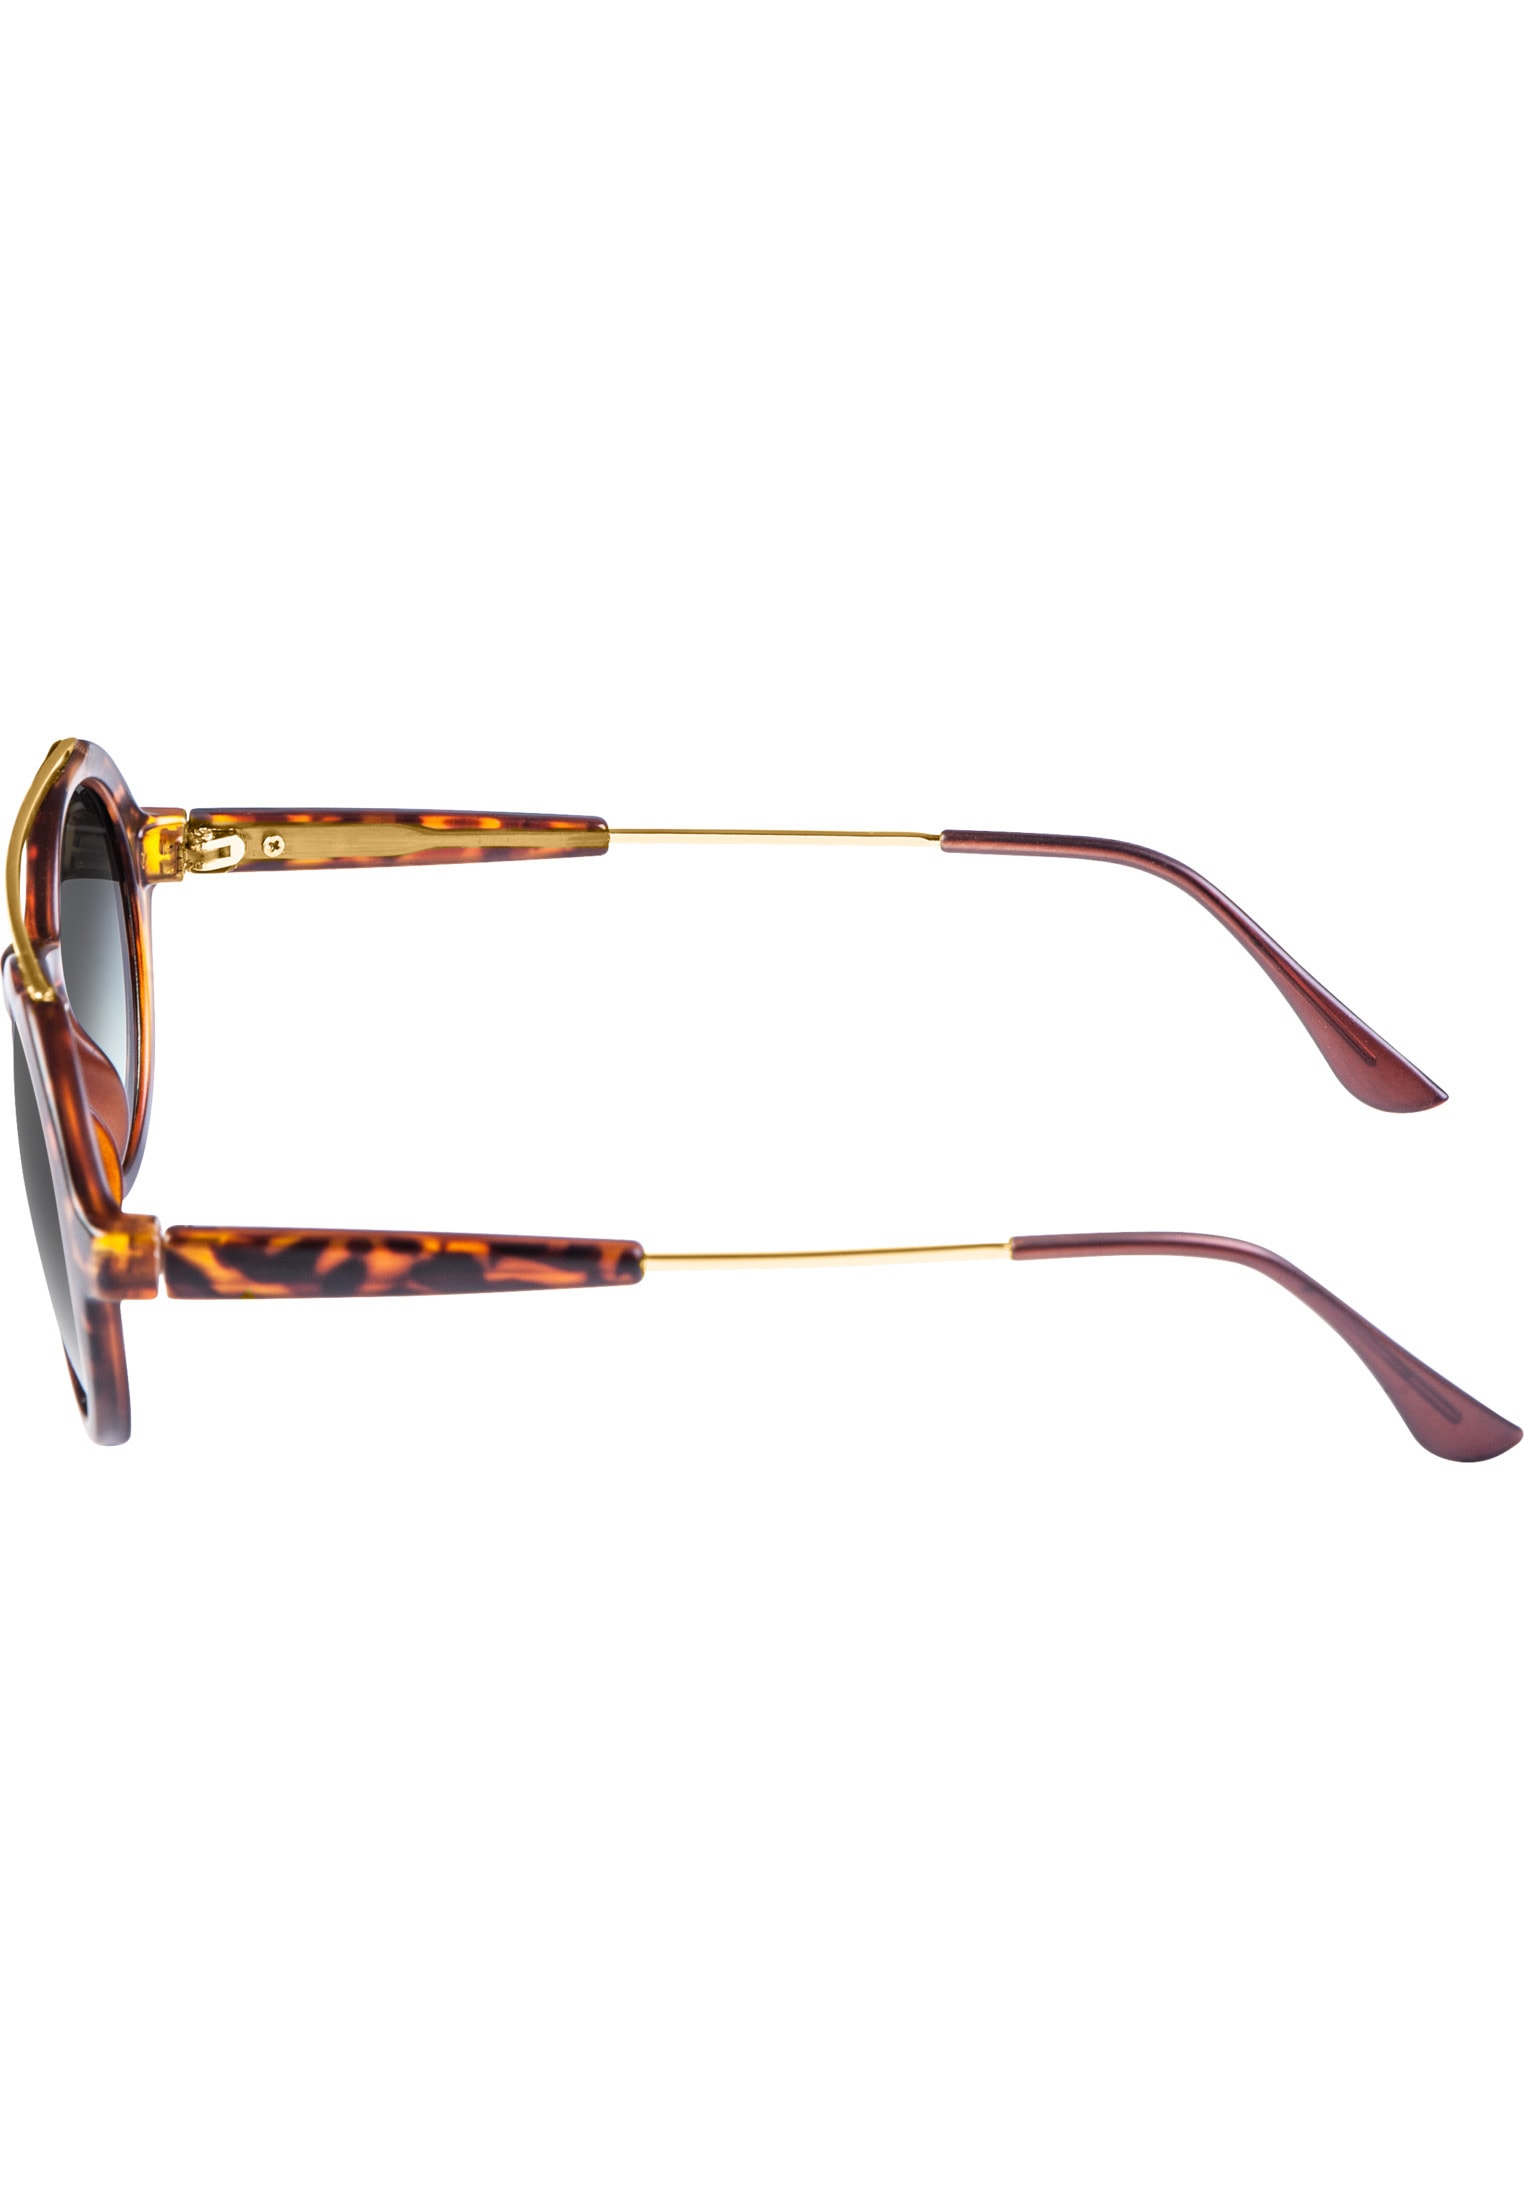 MSTRDS Sonnenbrille »Accessoires Sunglasses Retro Space« online kaufen |  I\'m walking